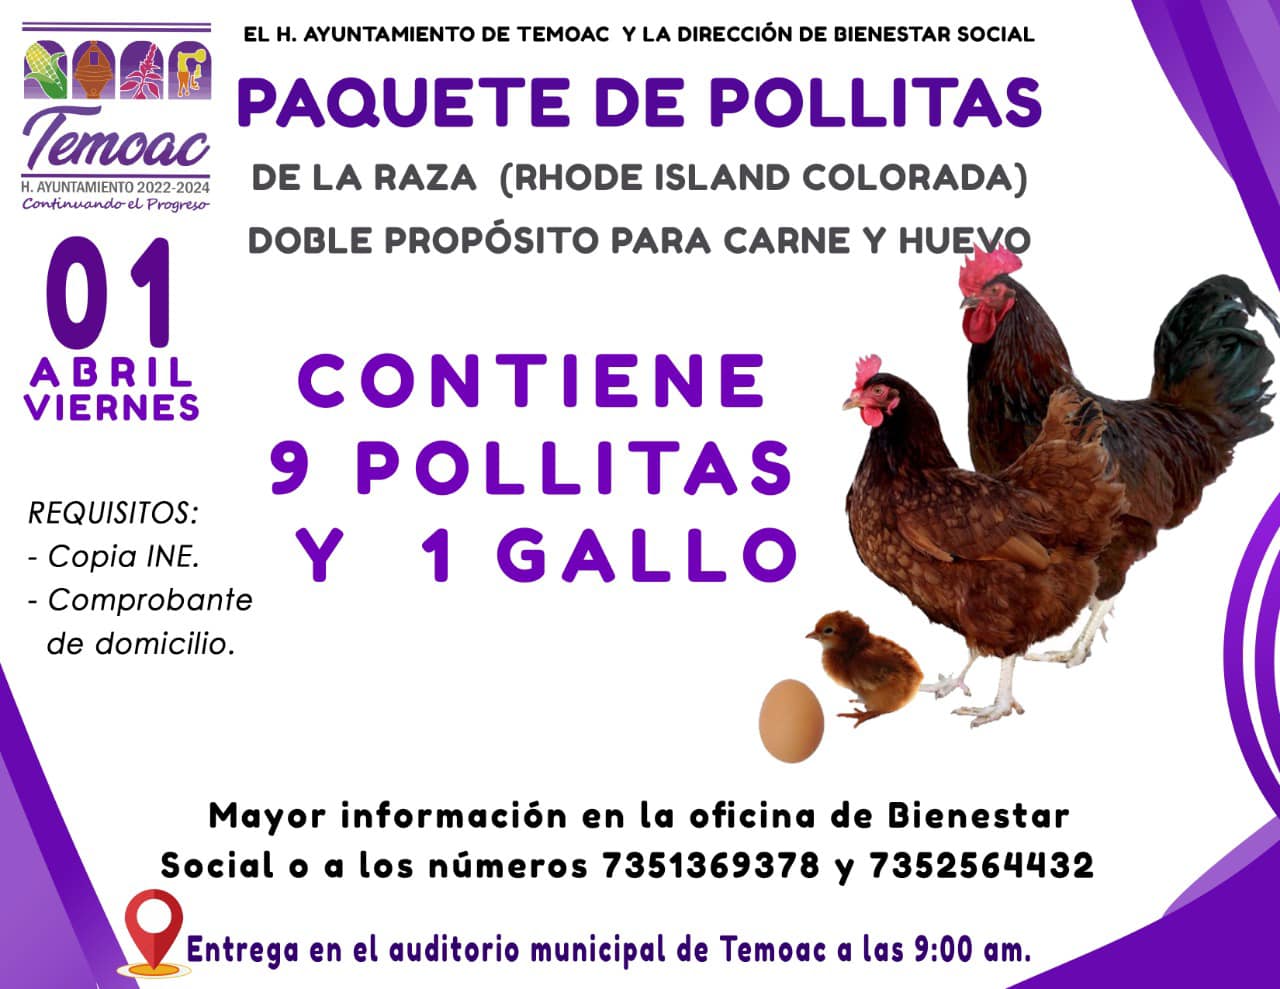 El H. Ayuntamiento de Temoac a través de la Dirección de Bienestar Social, les hacen la invitación para los que estén interesados en adquirir un paquete de pollitas ( contiene 9 pollitas y un gallo).